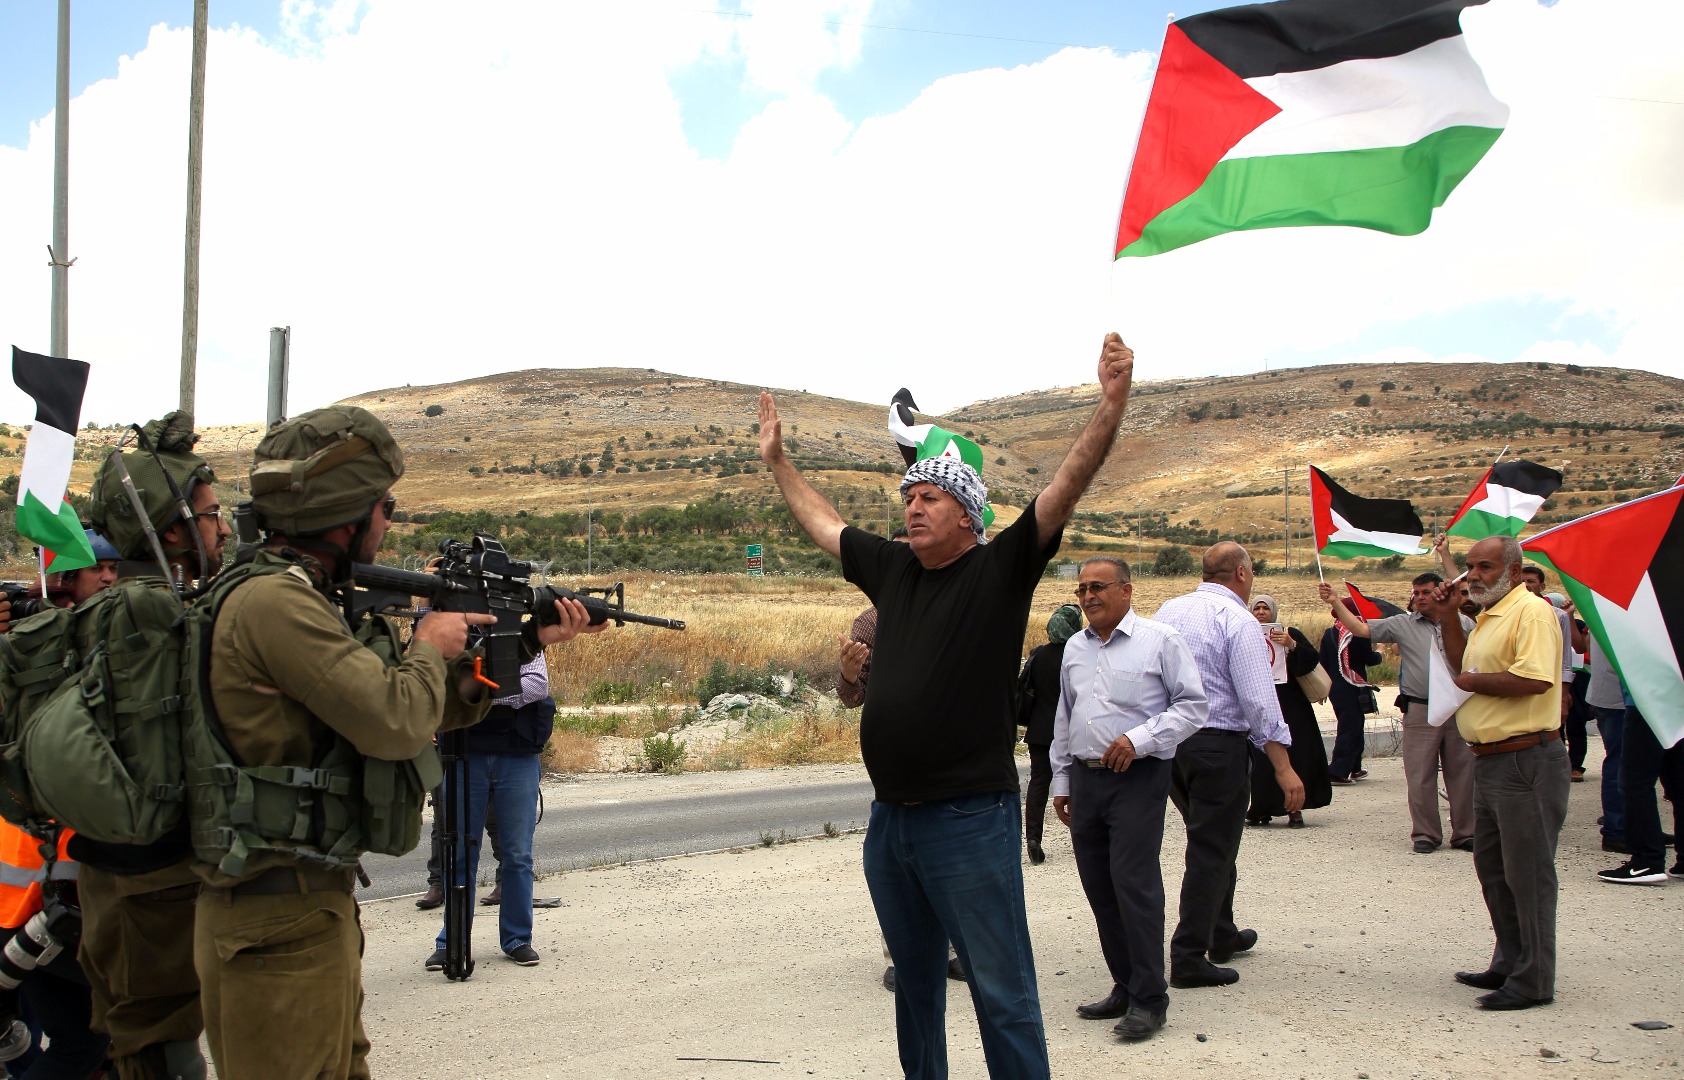 Multa por llevar una bandera palestina en un estadio? El caso de Eibar  agita el debate sobre la libertad de expresión